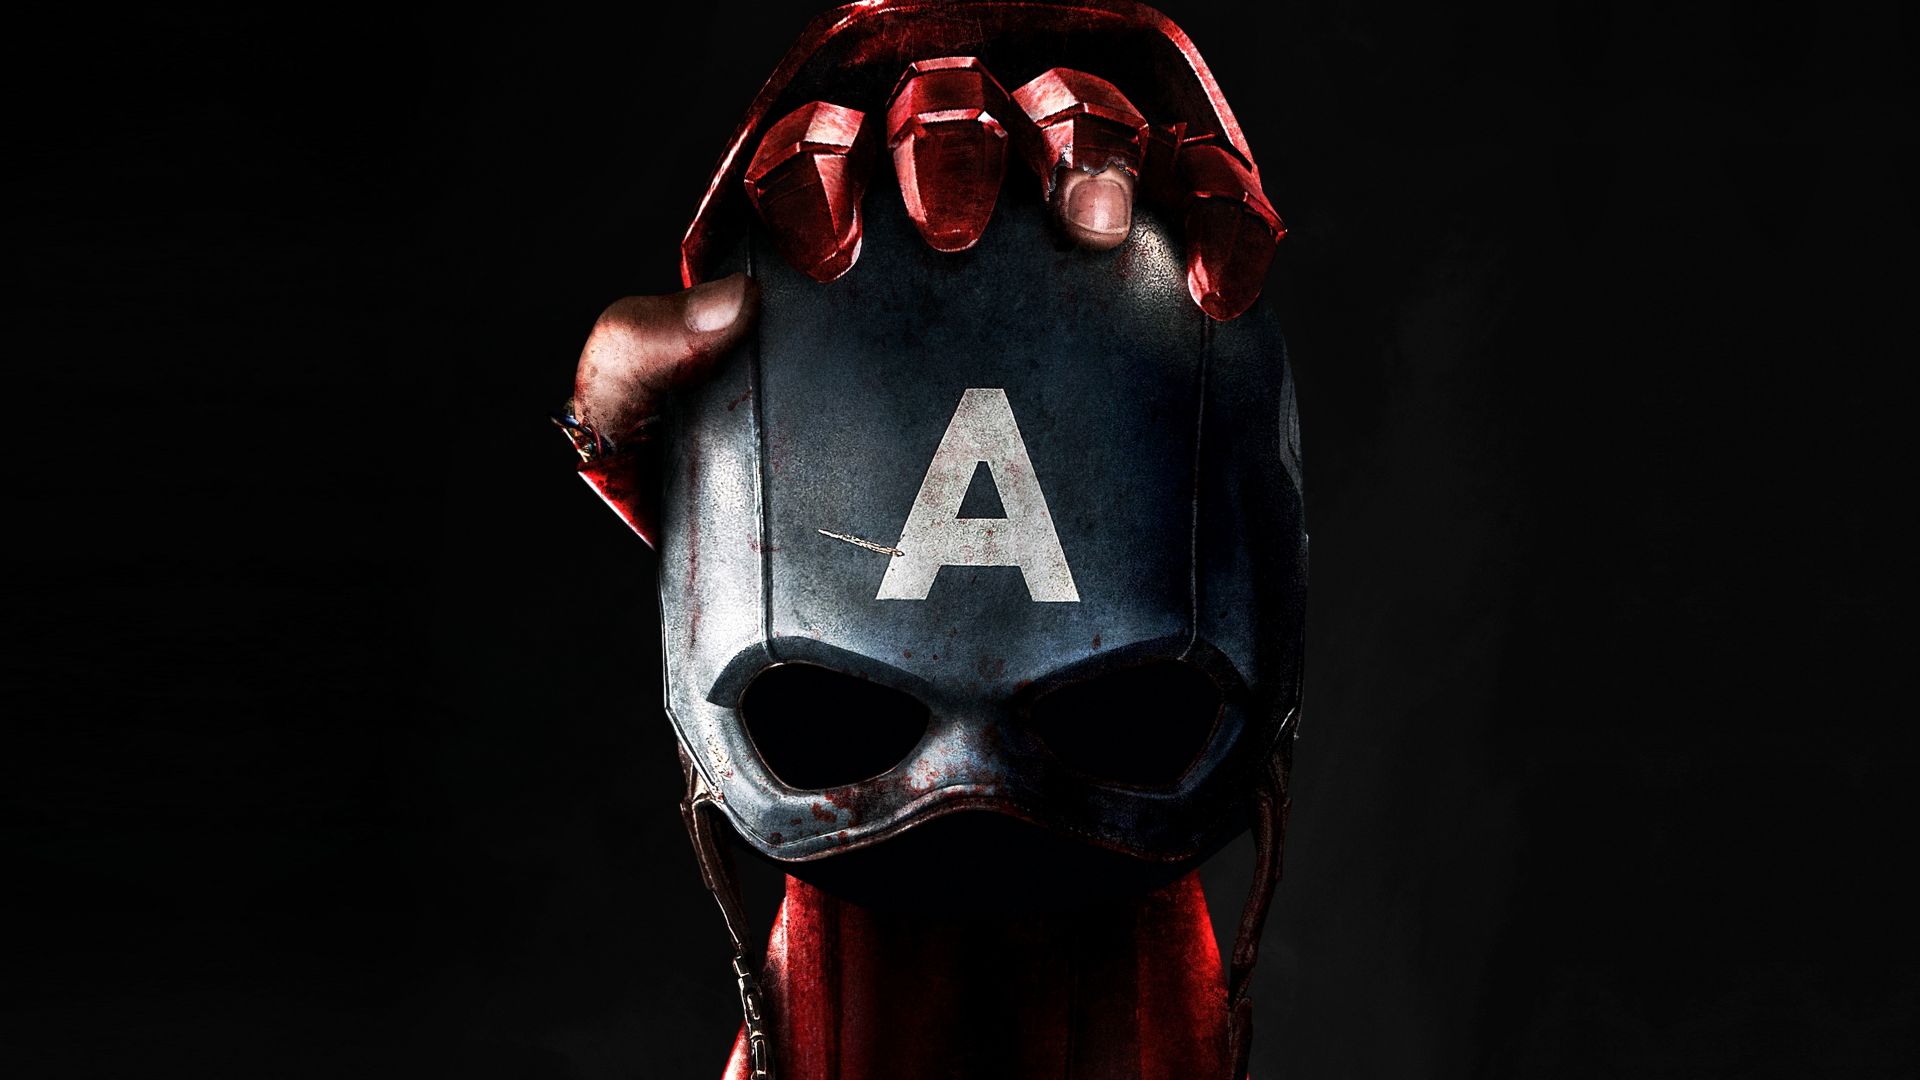 Первый мститель: Гражданская война, череп, маска, железный человек, Марвел, лучшие фильмы 2016, Captain America 3: civil war, skull, mask, Iron Man, Marvel, best movies of 2016 (horizontal)